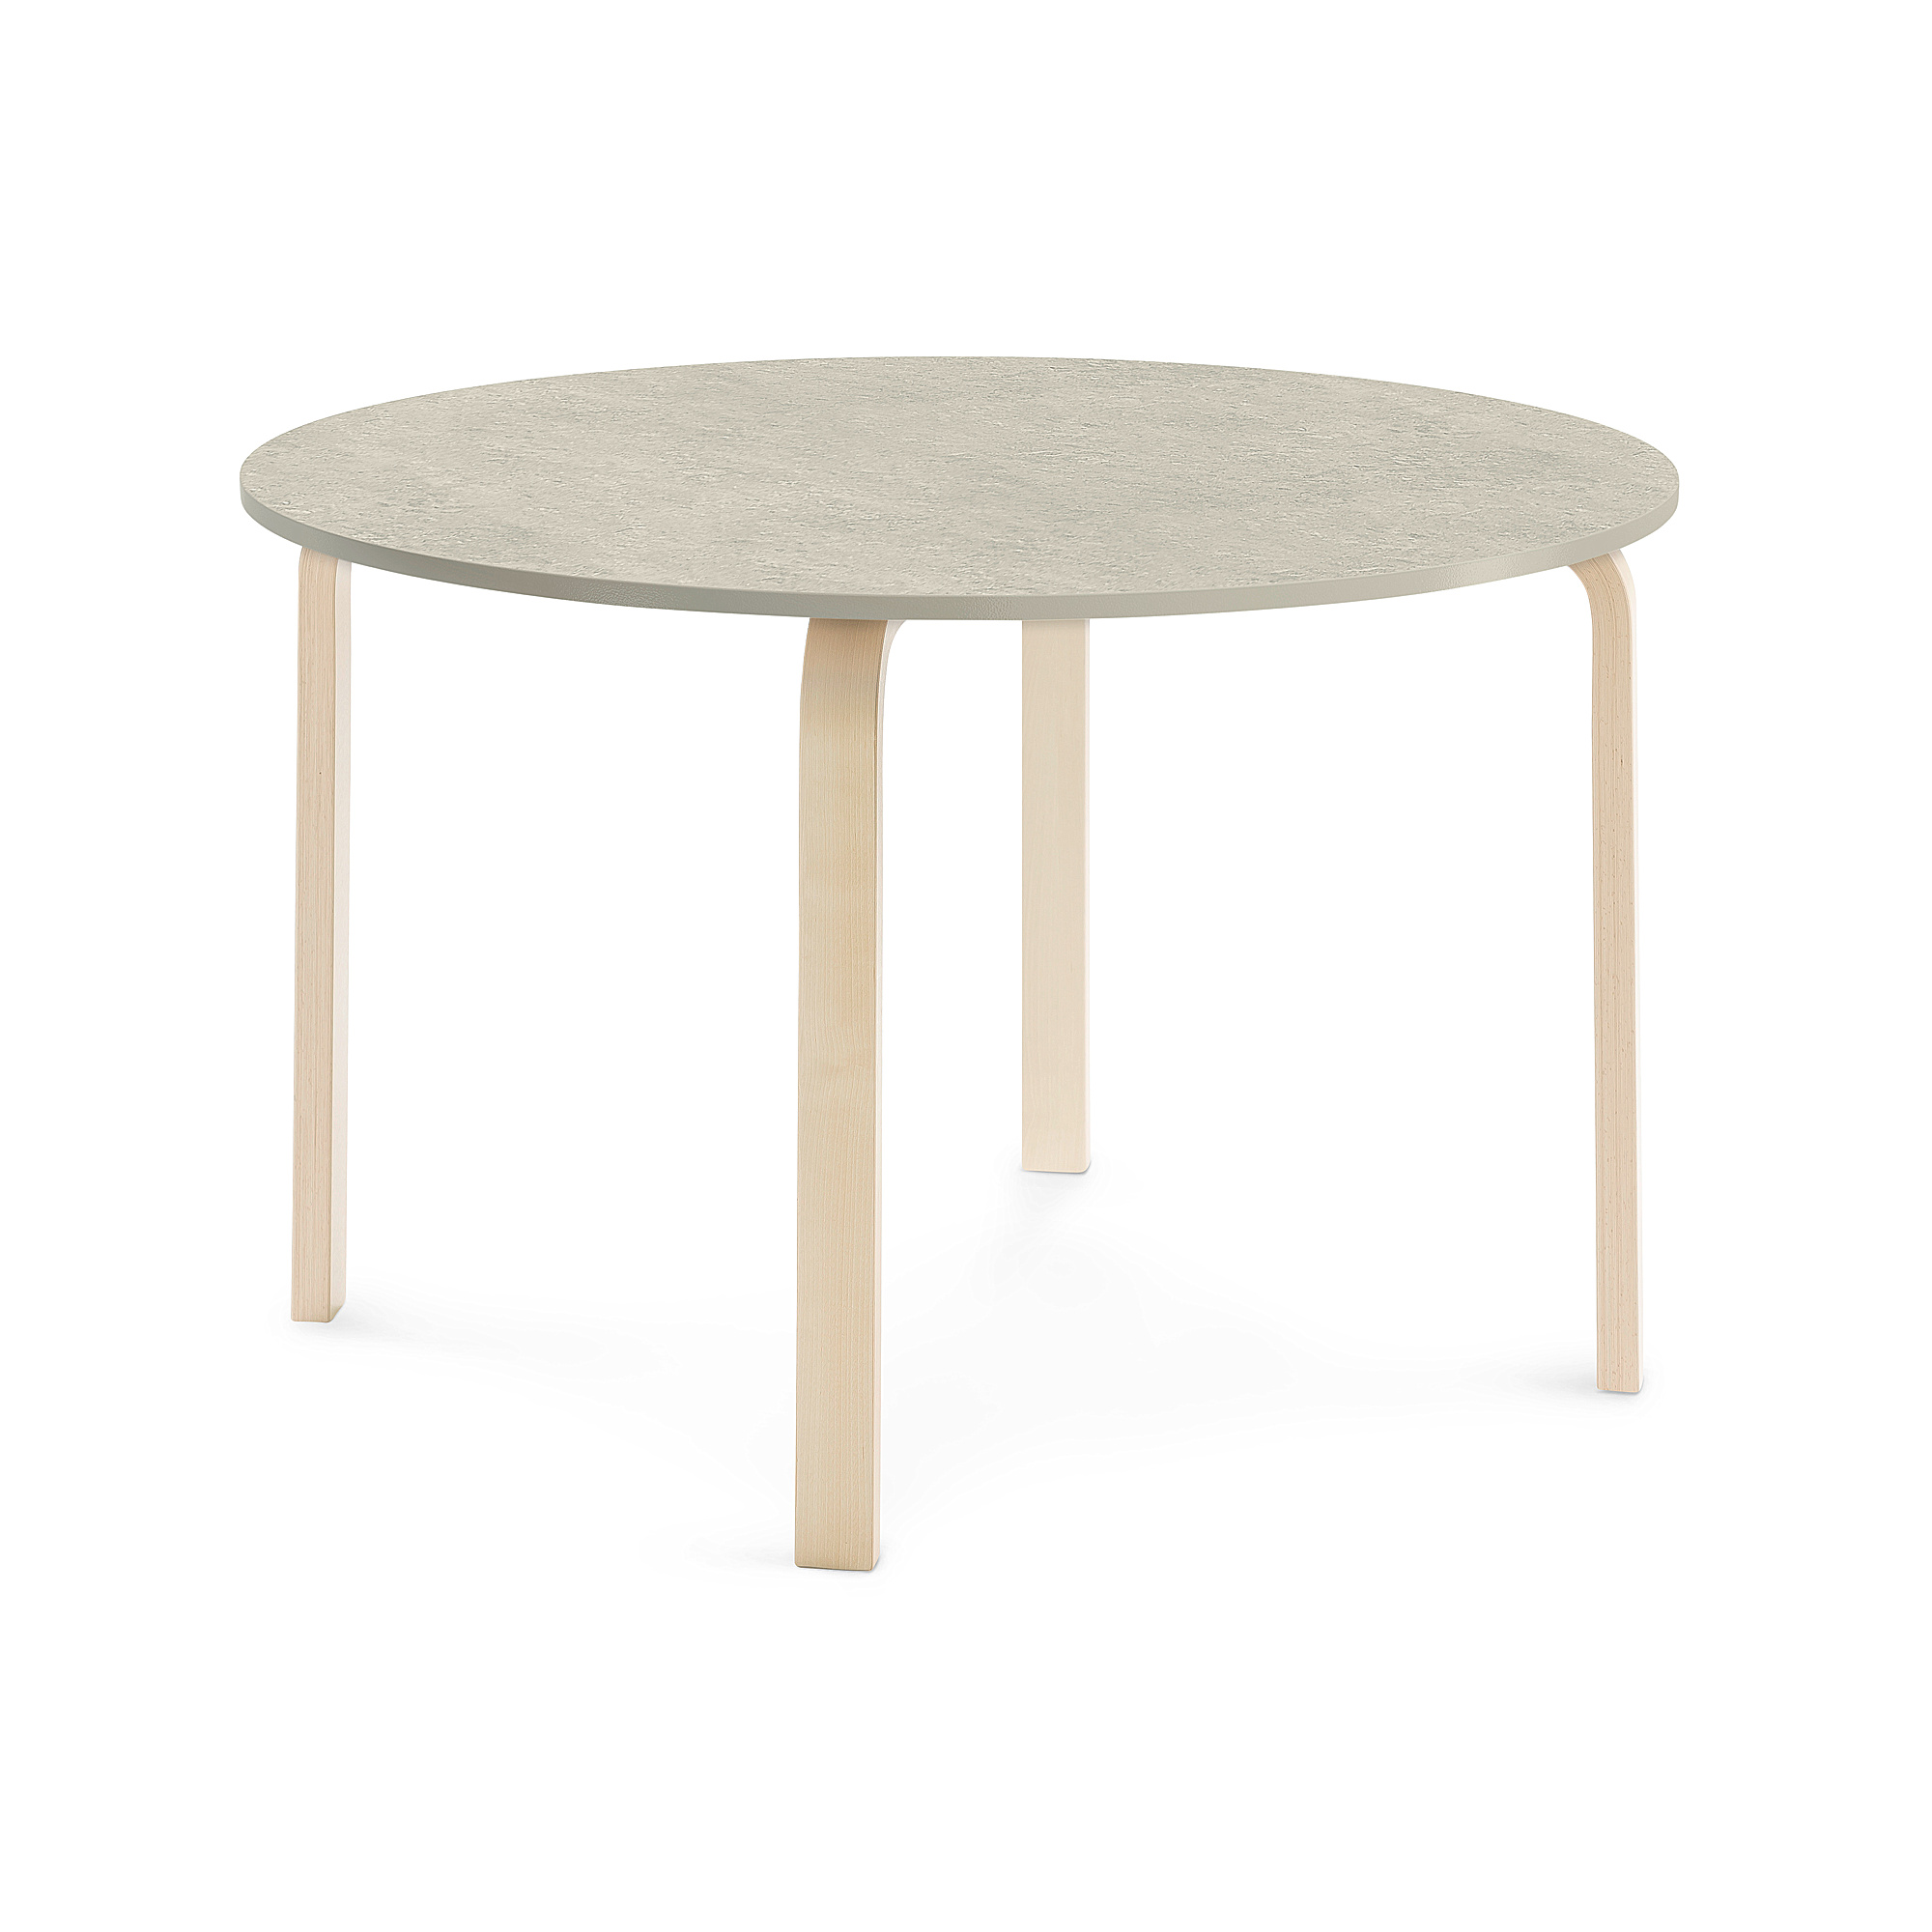 Stůl ELTON, Ø 1200x710 mm, bříza, akustické linoleum, šedá